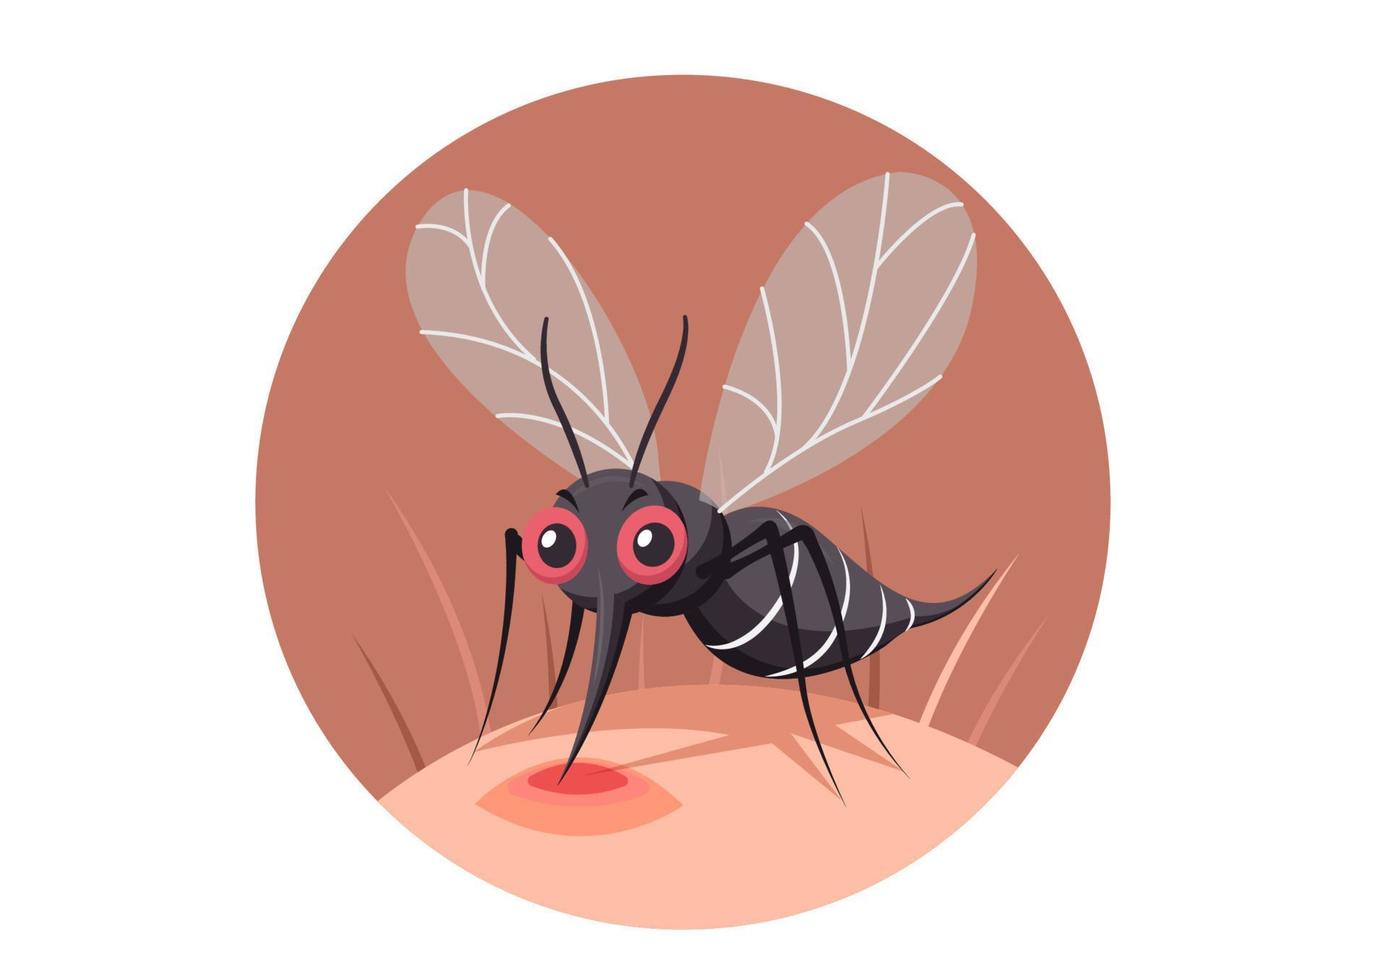 o mosquito inseto pica e suga o sangue no corpo humano. personagem. bandeira em um fundo branco. vetor de ilustração de desenhos animados de estilo simples